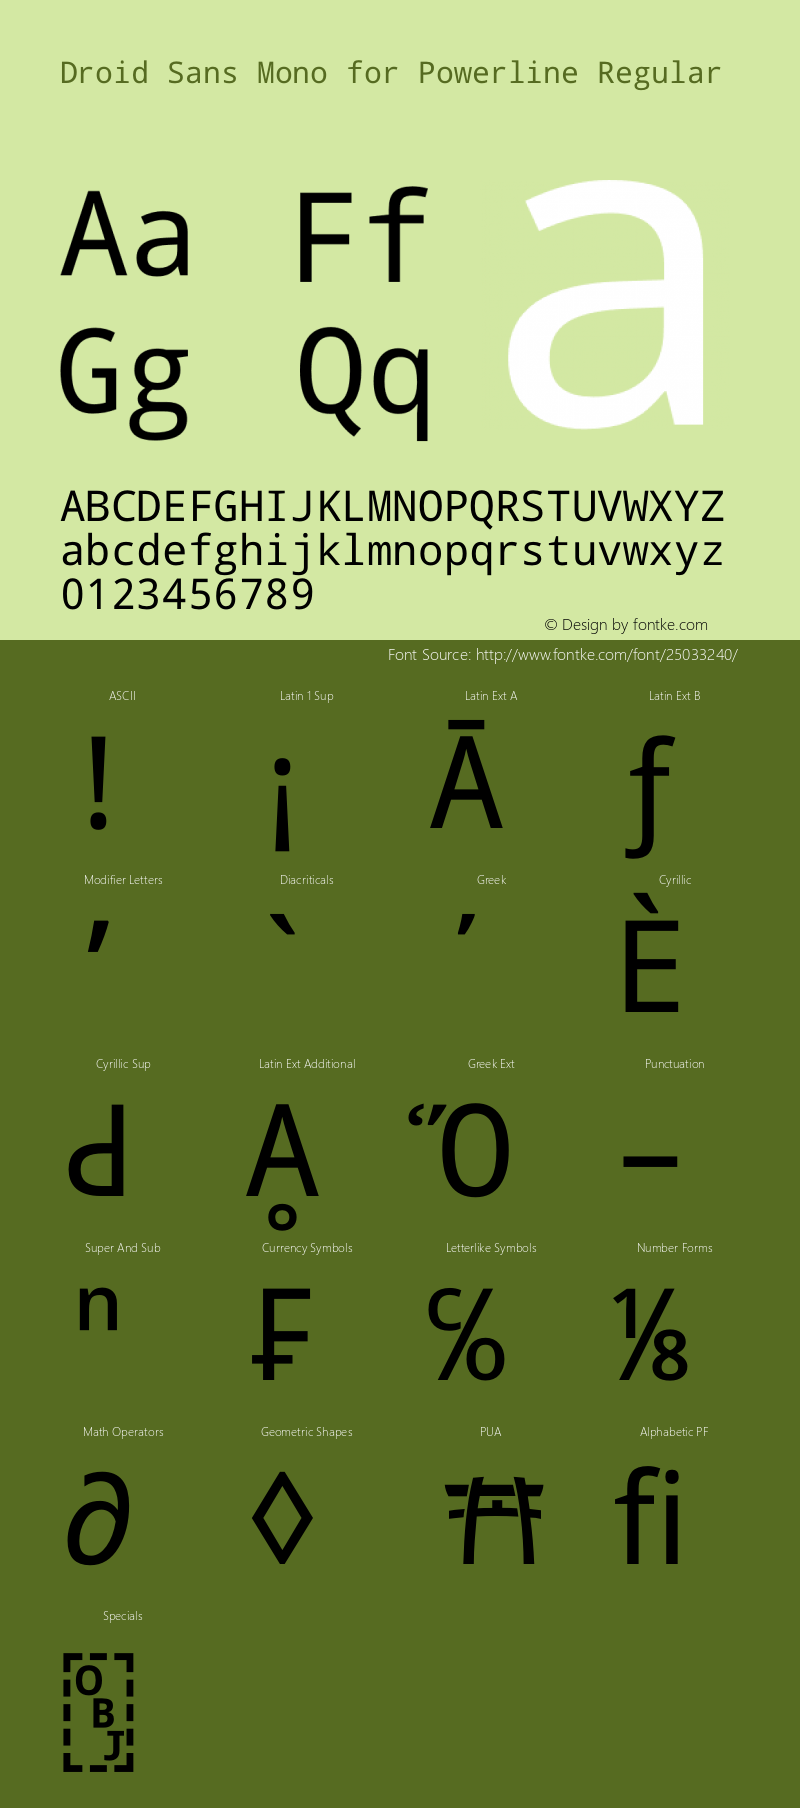 Droid Sans Mono for Powerline Nerd Font Plus Font Awesome Plus Octicons Plus Pomicons Windows Compatible Version 1.00 build 113 Font Sample